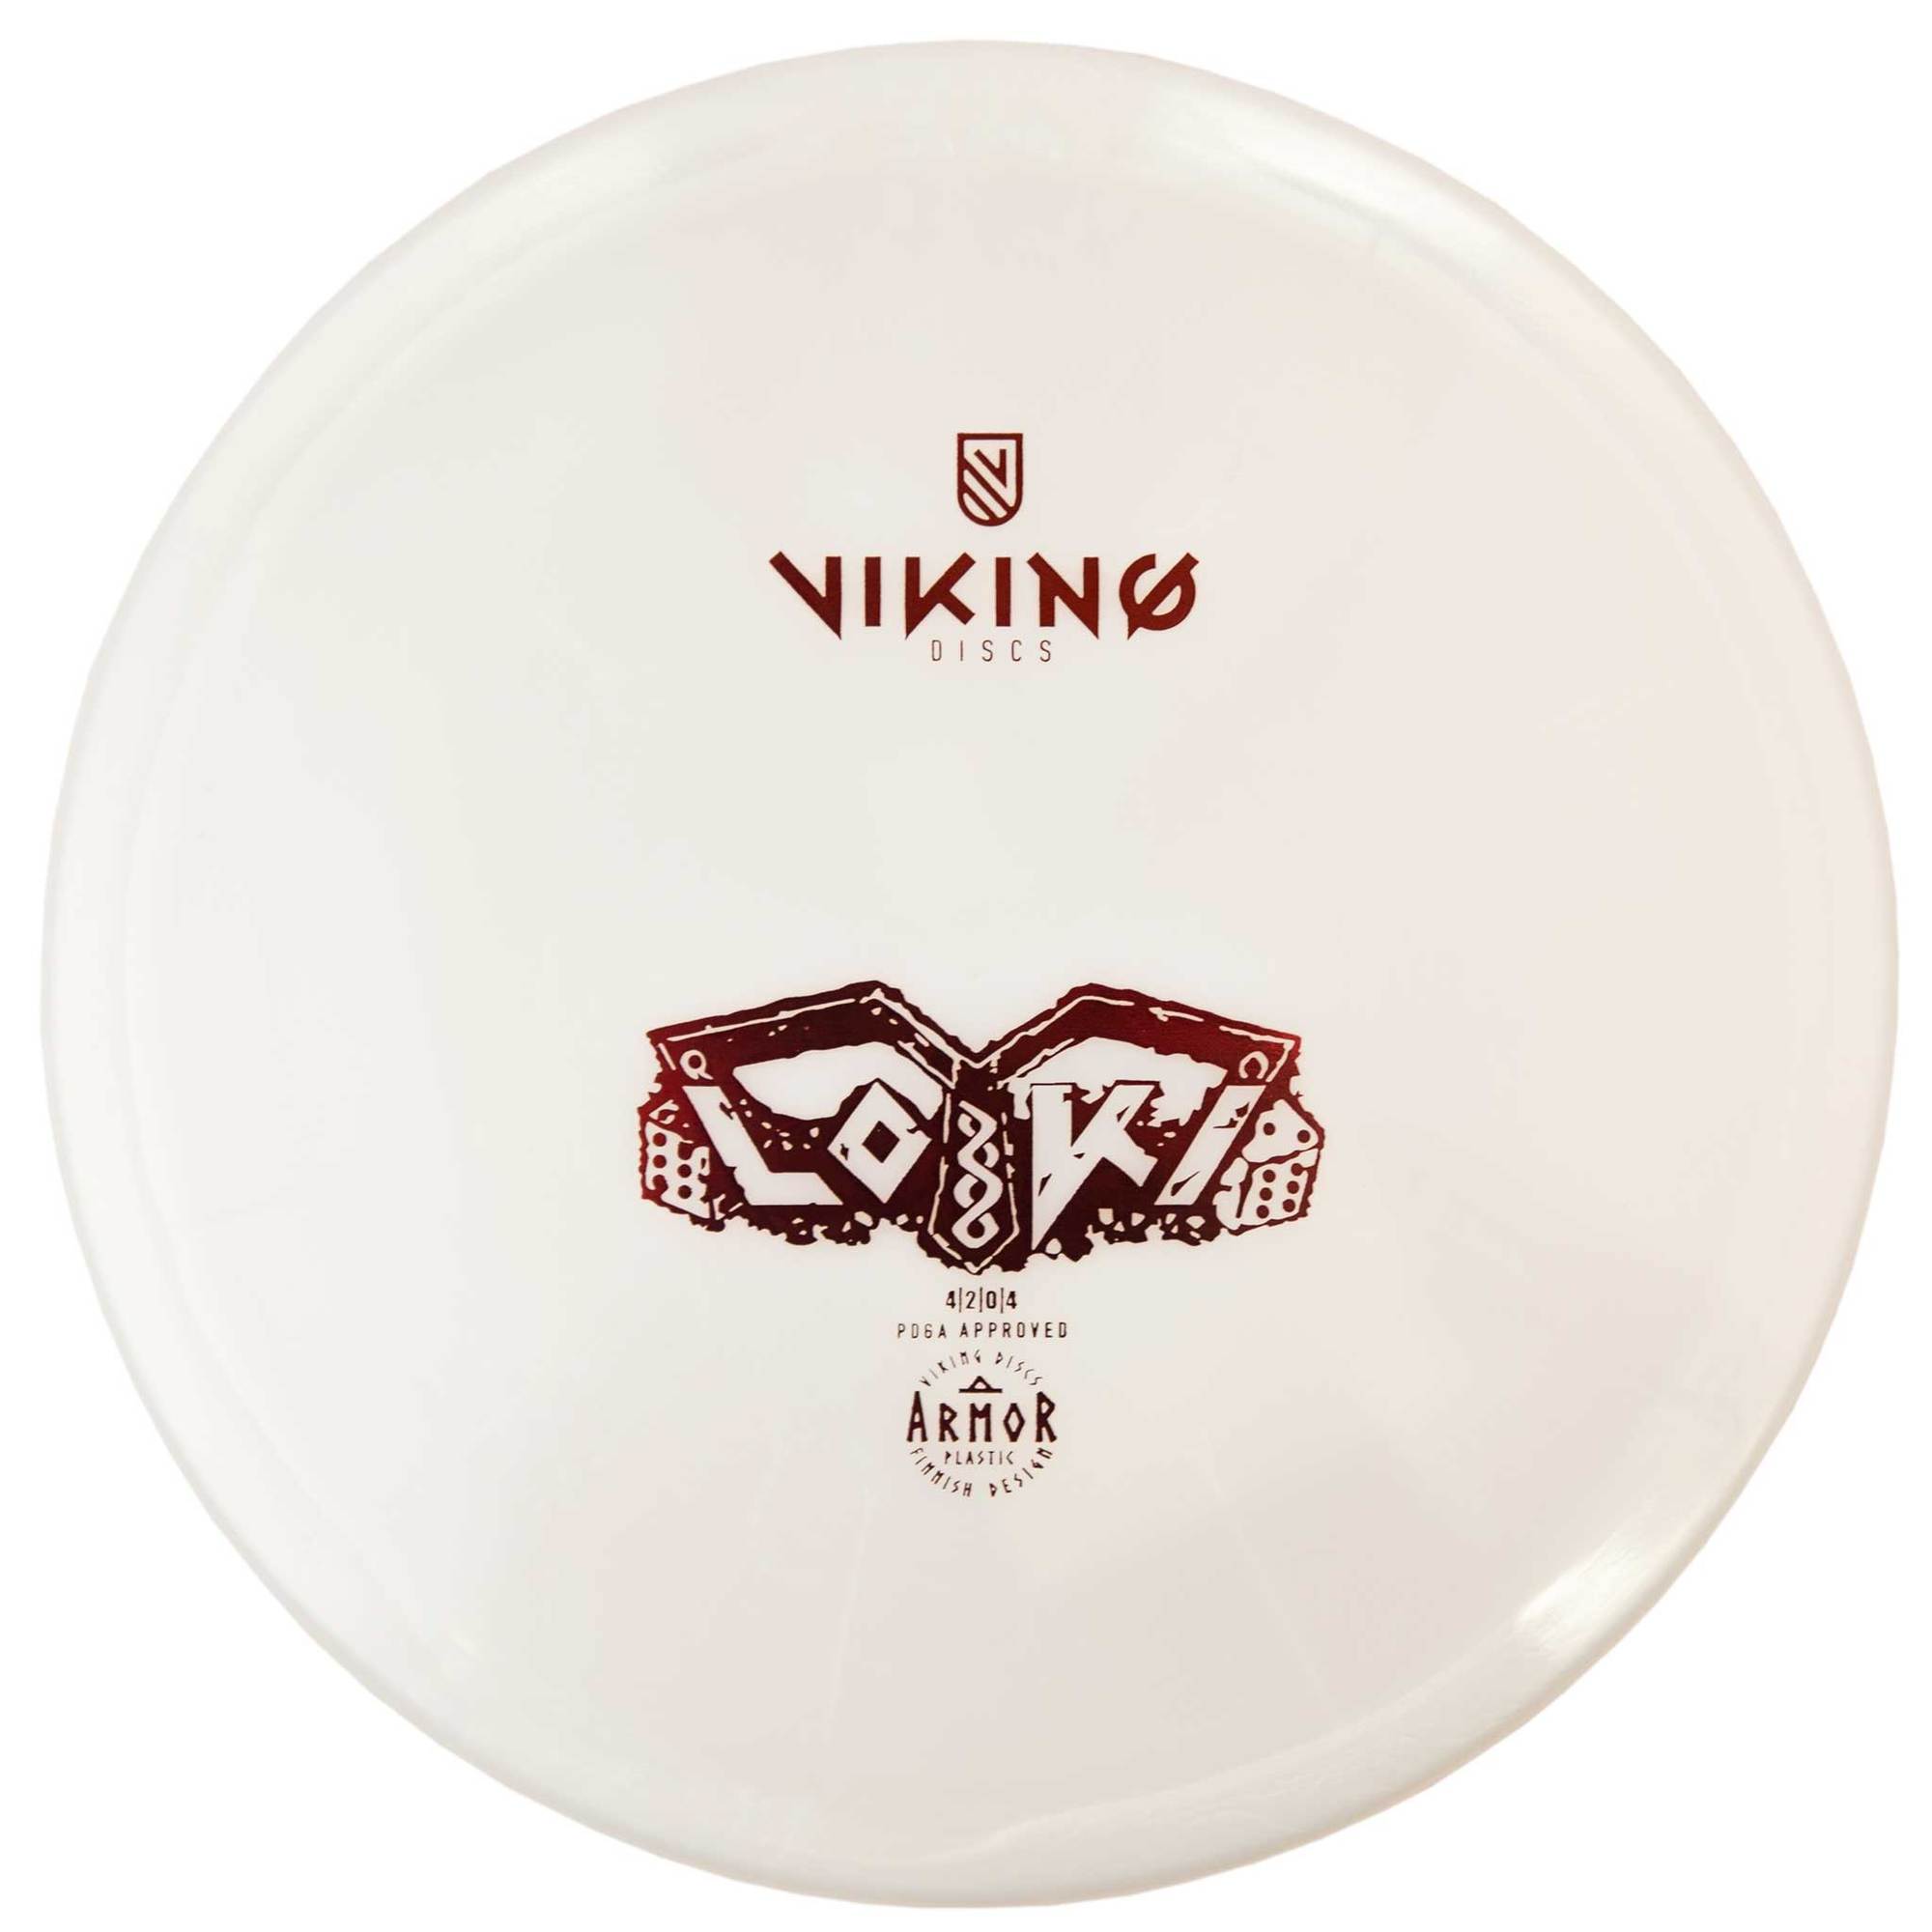 Viking Discs – Armor Loki